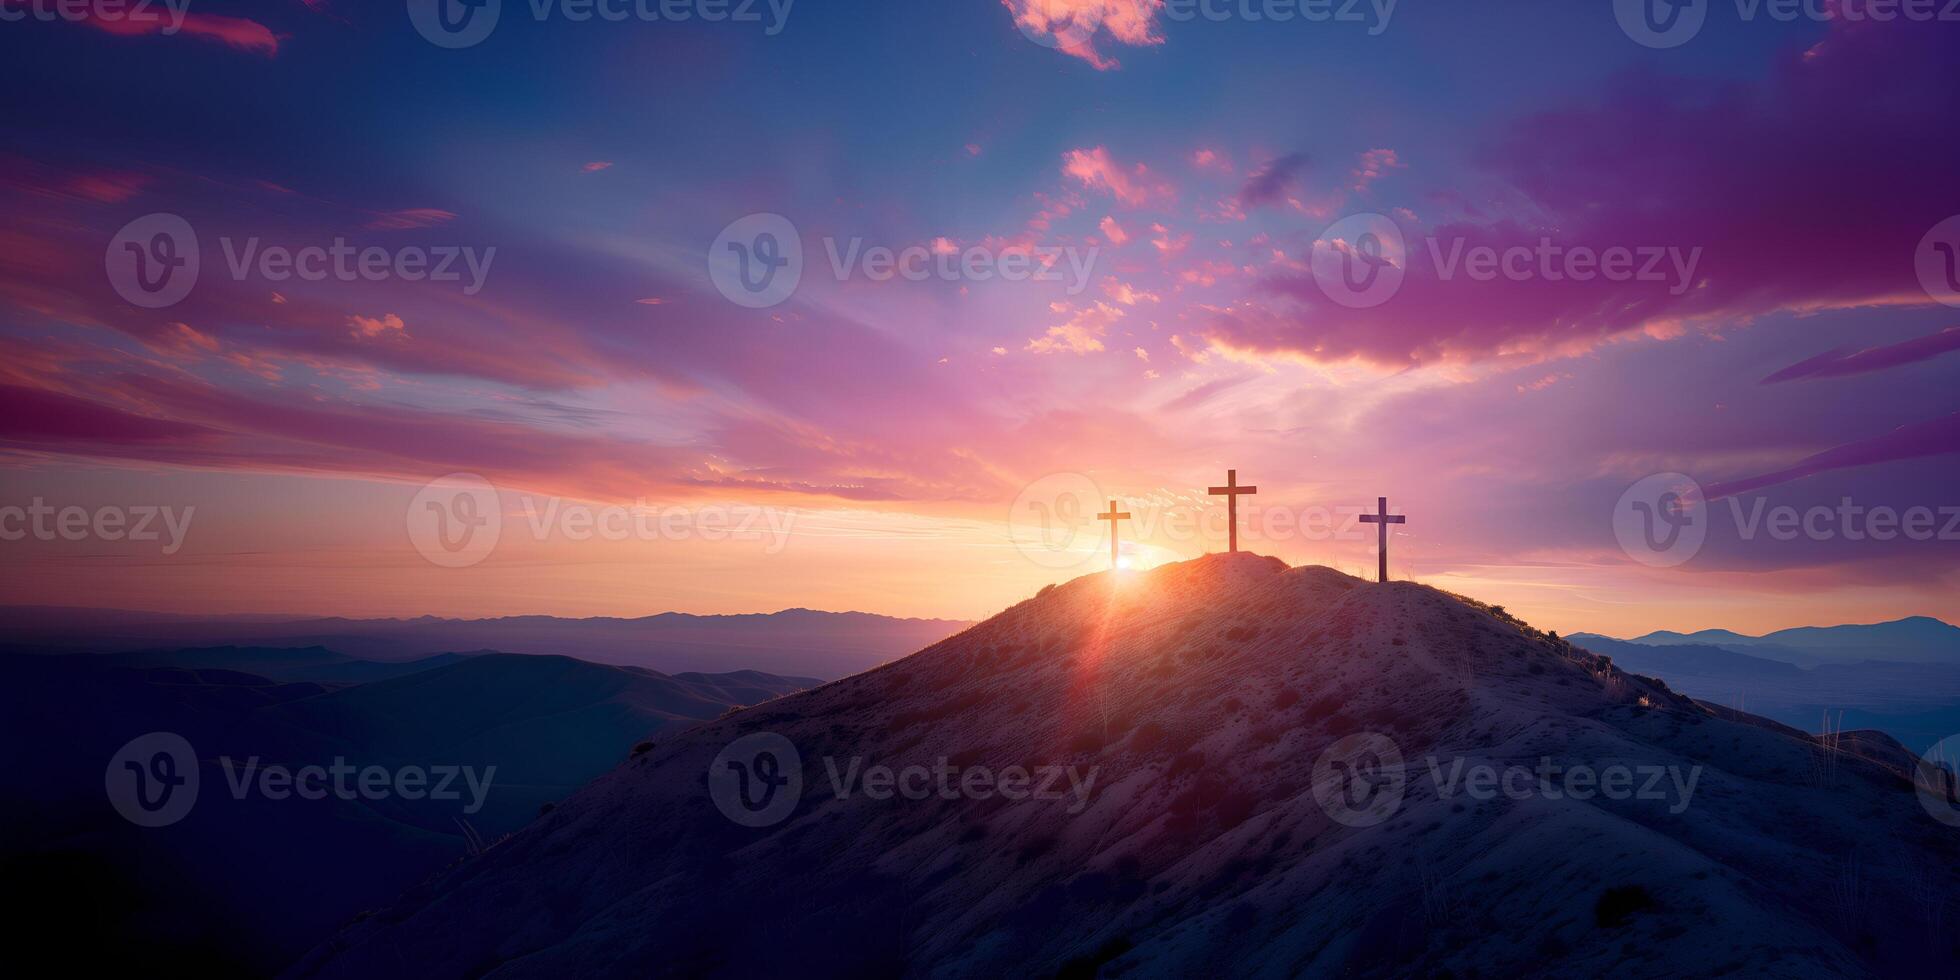 Trois Christian des croix sur le Montagne à lever du soleil, le crucifixion de Jésus Christ photo